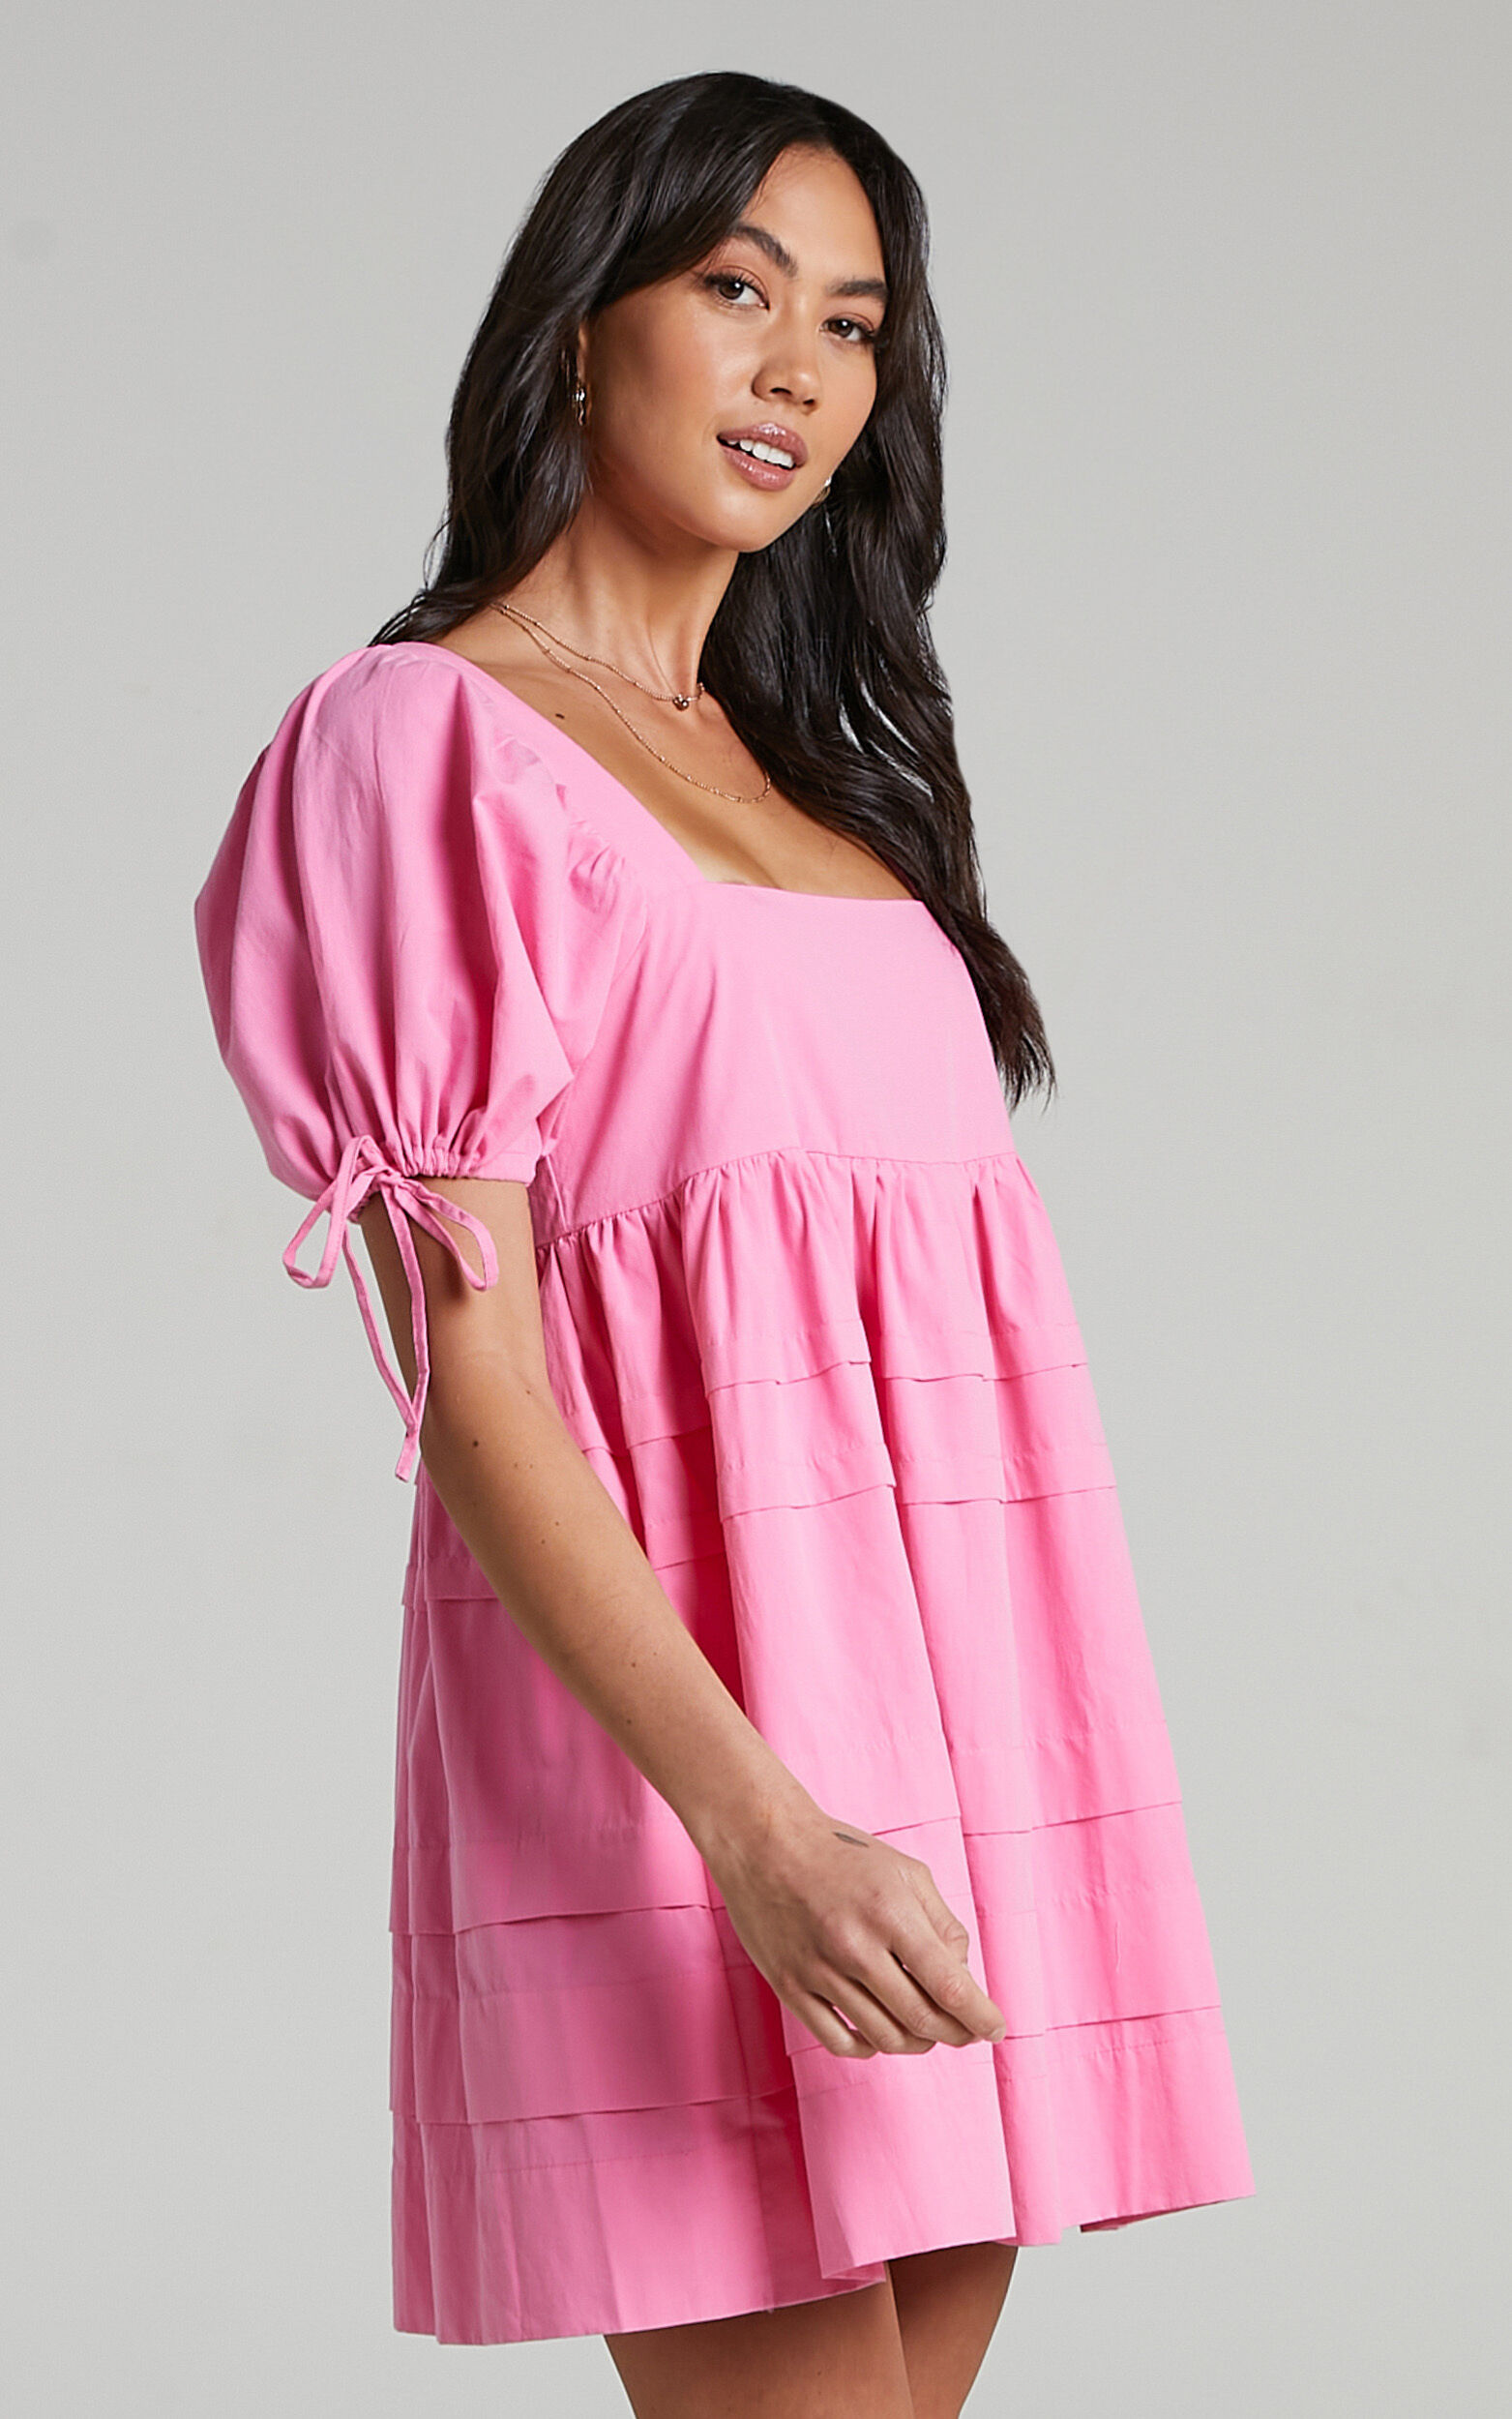 Josie Tweed Dress- Pink